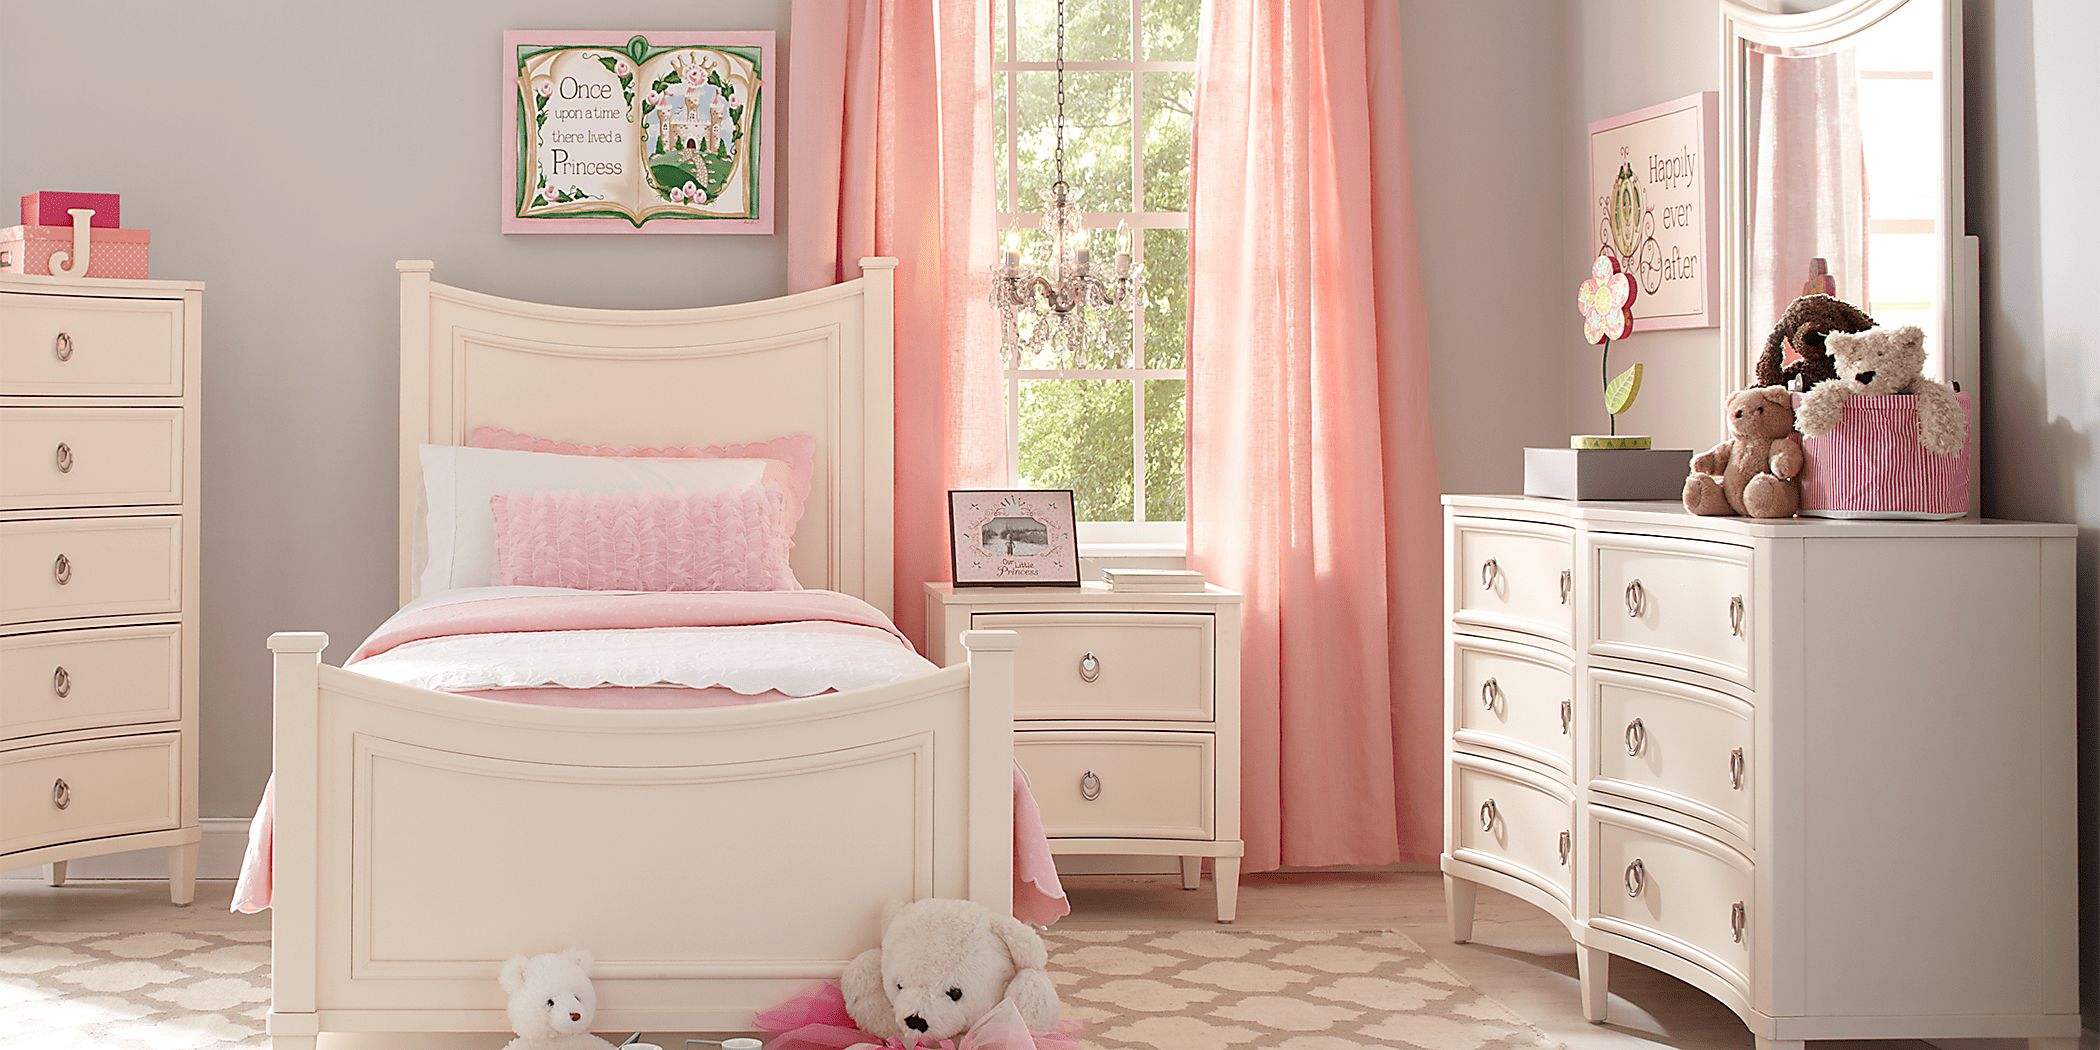 Pink Bedside Table Wicker Storage Basket Bedroom Furniture Girls Cabinet Matchin 